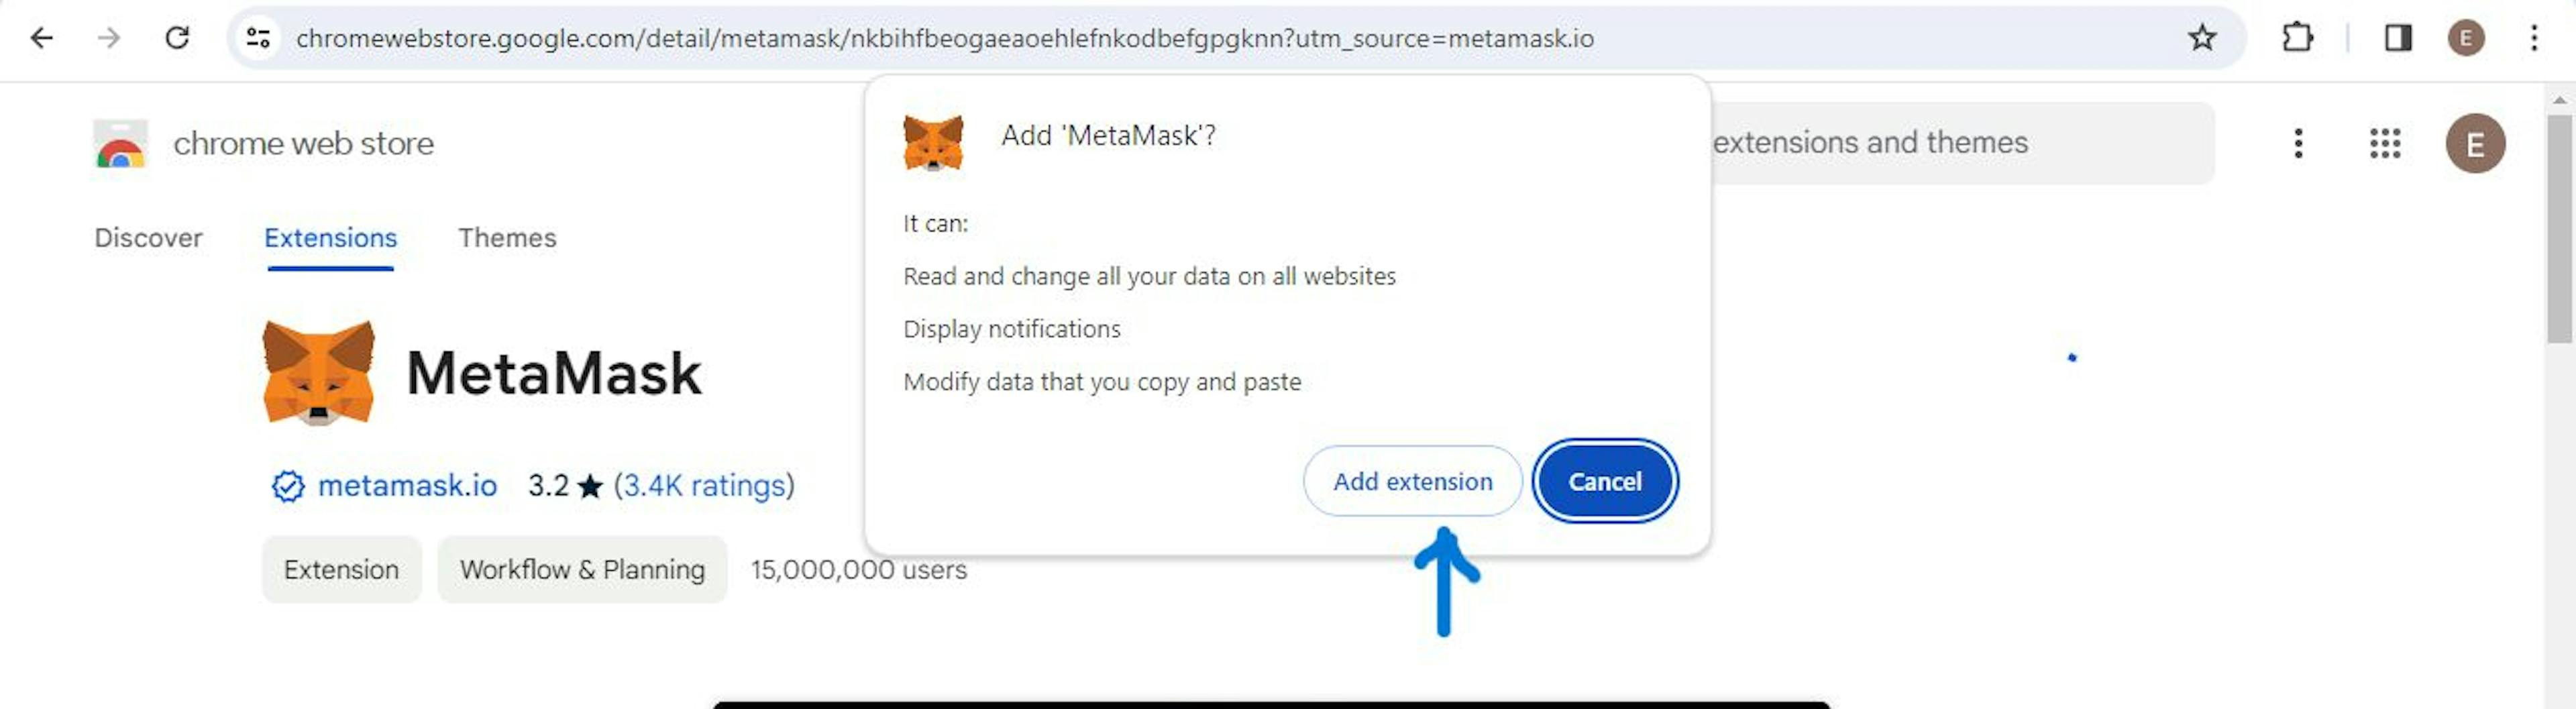 MetaMask uzantısının Chrome tarayıcıya nasıl ekleneceğini gösteren resim.